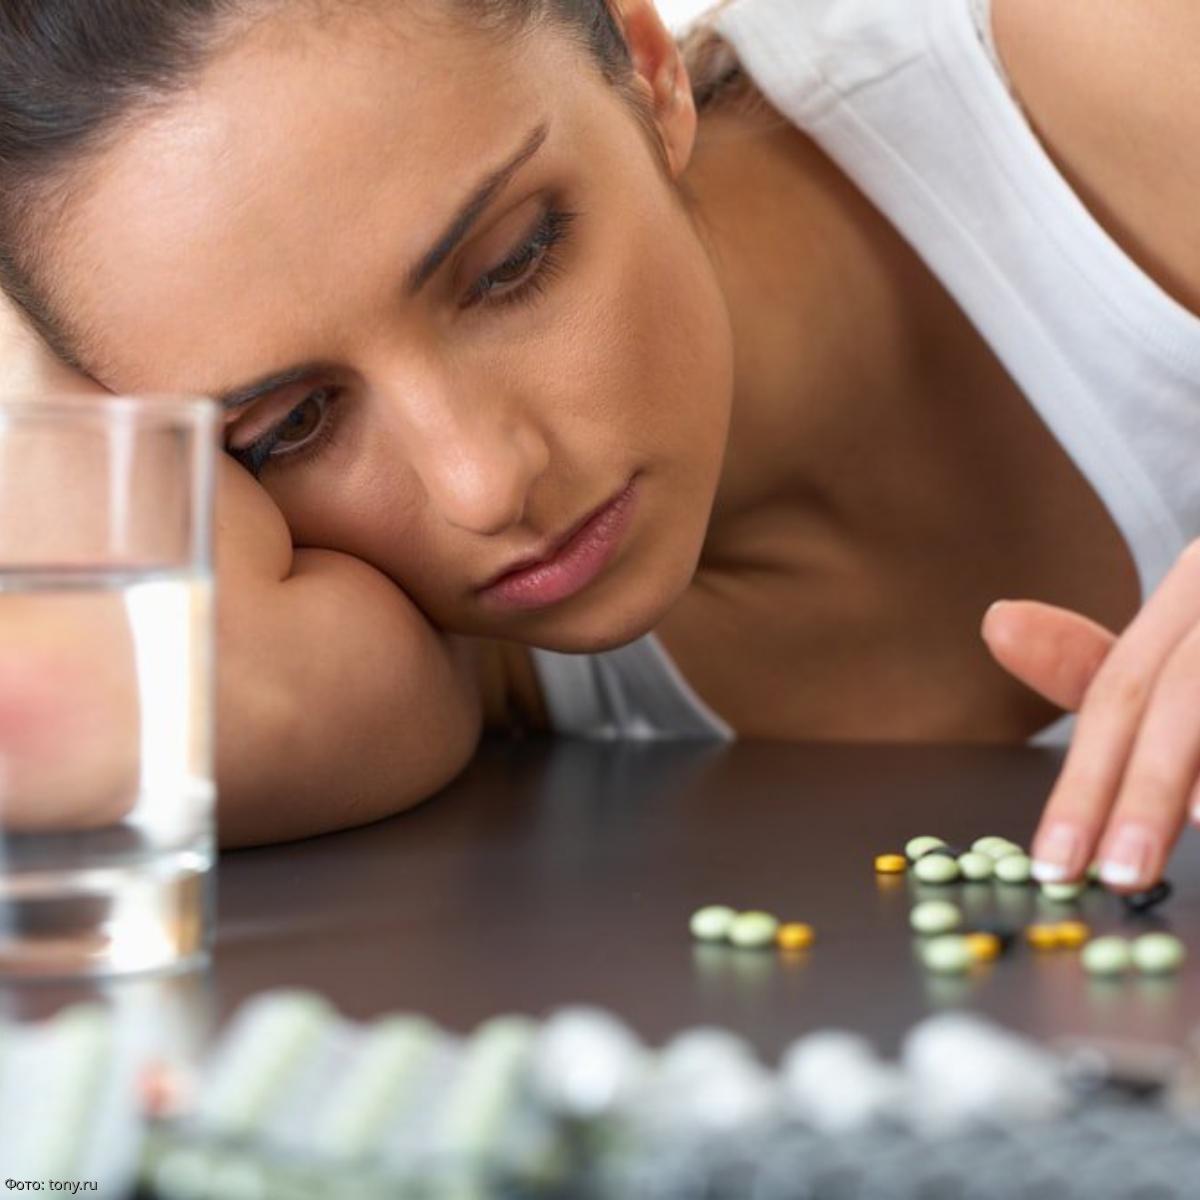 Перестаньте пить витамины. Проблемы со здоровьем. Антидепрессанты девушка. Таблетки зависимость. Девушка пьет таблетки.